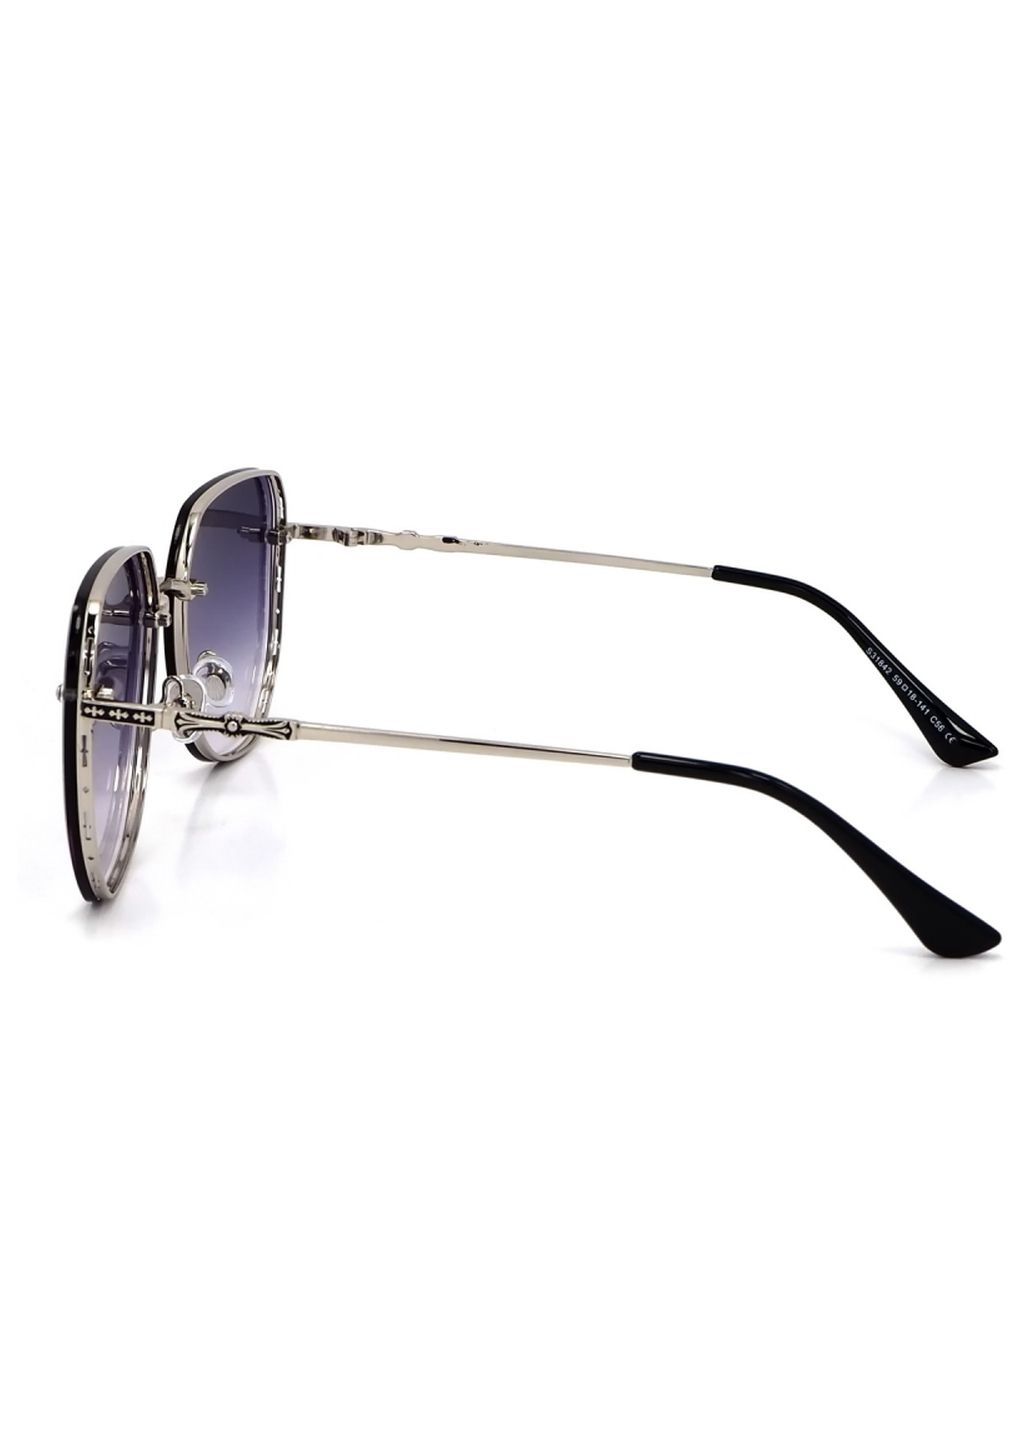 Купить Женские солнцезащитные очки Merlini с поляризацией S31842 117124 - Серебристый в интернет-магазине